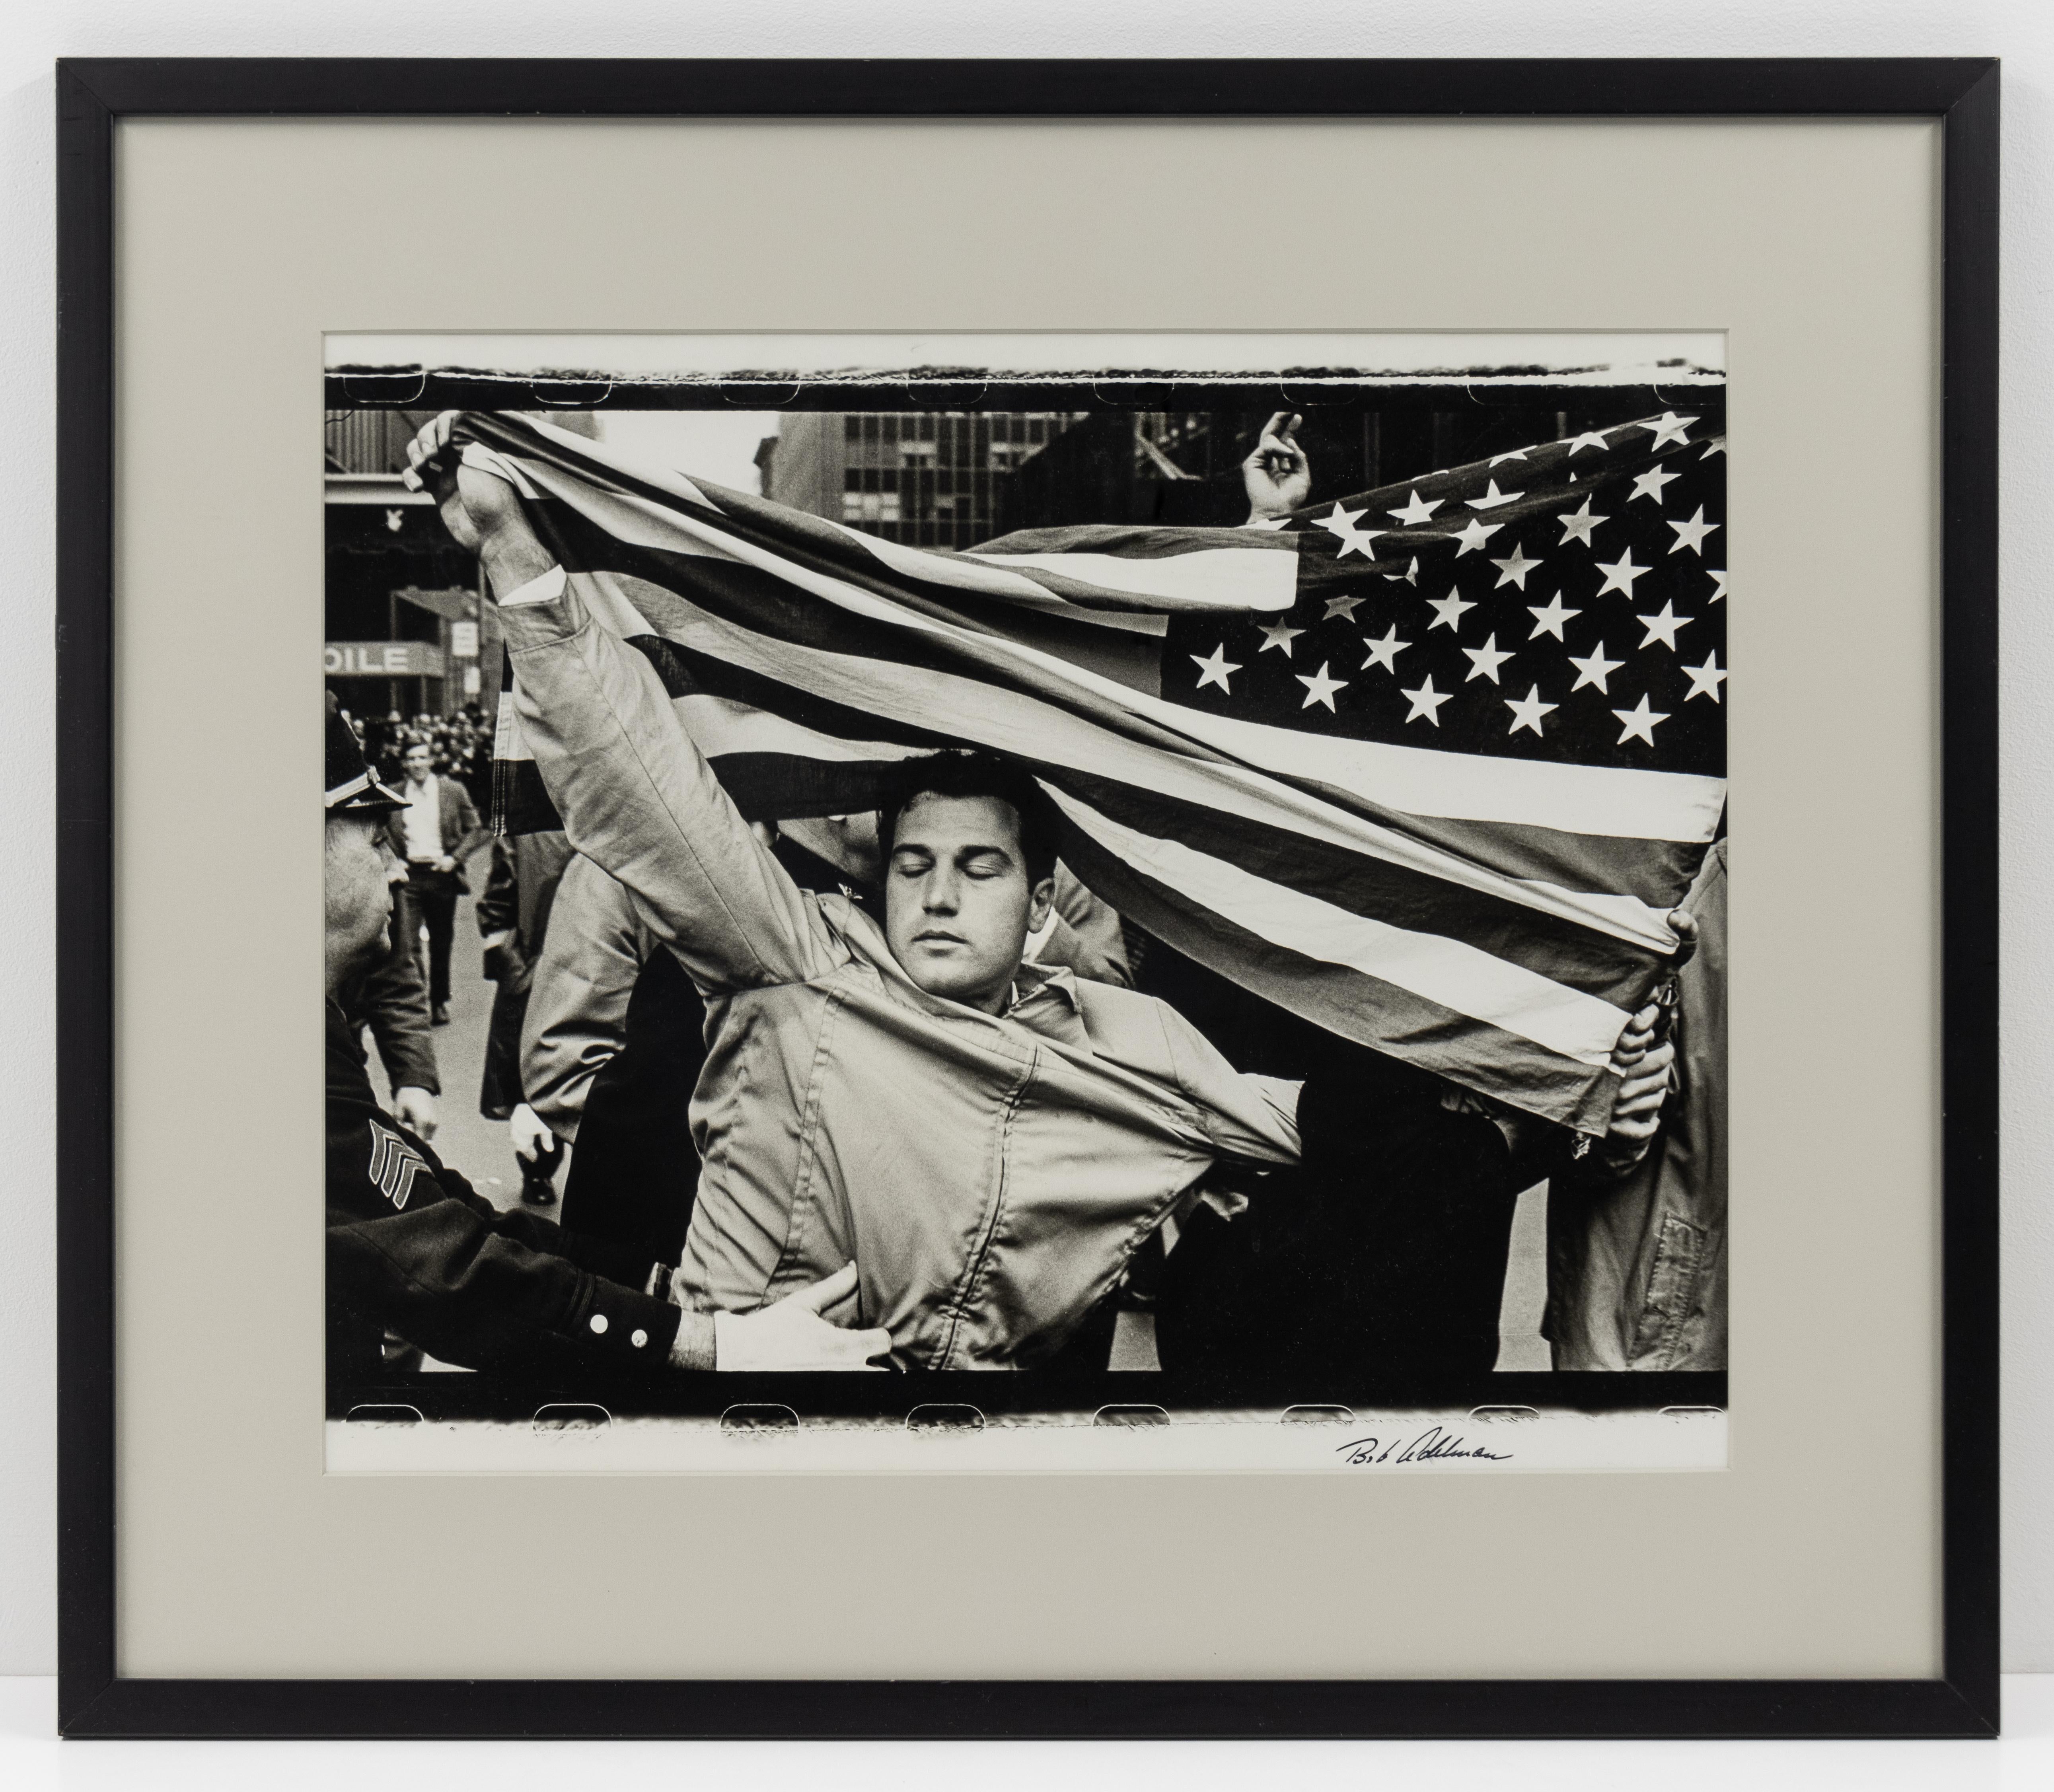 Pro-Vietnam-Kriegs- Demonstrator auf Antikriegs-Demonstration in New York City. (Zeitgenössisch), Photograph, von Bob Adelman